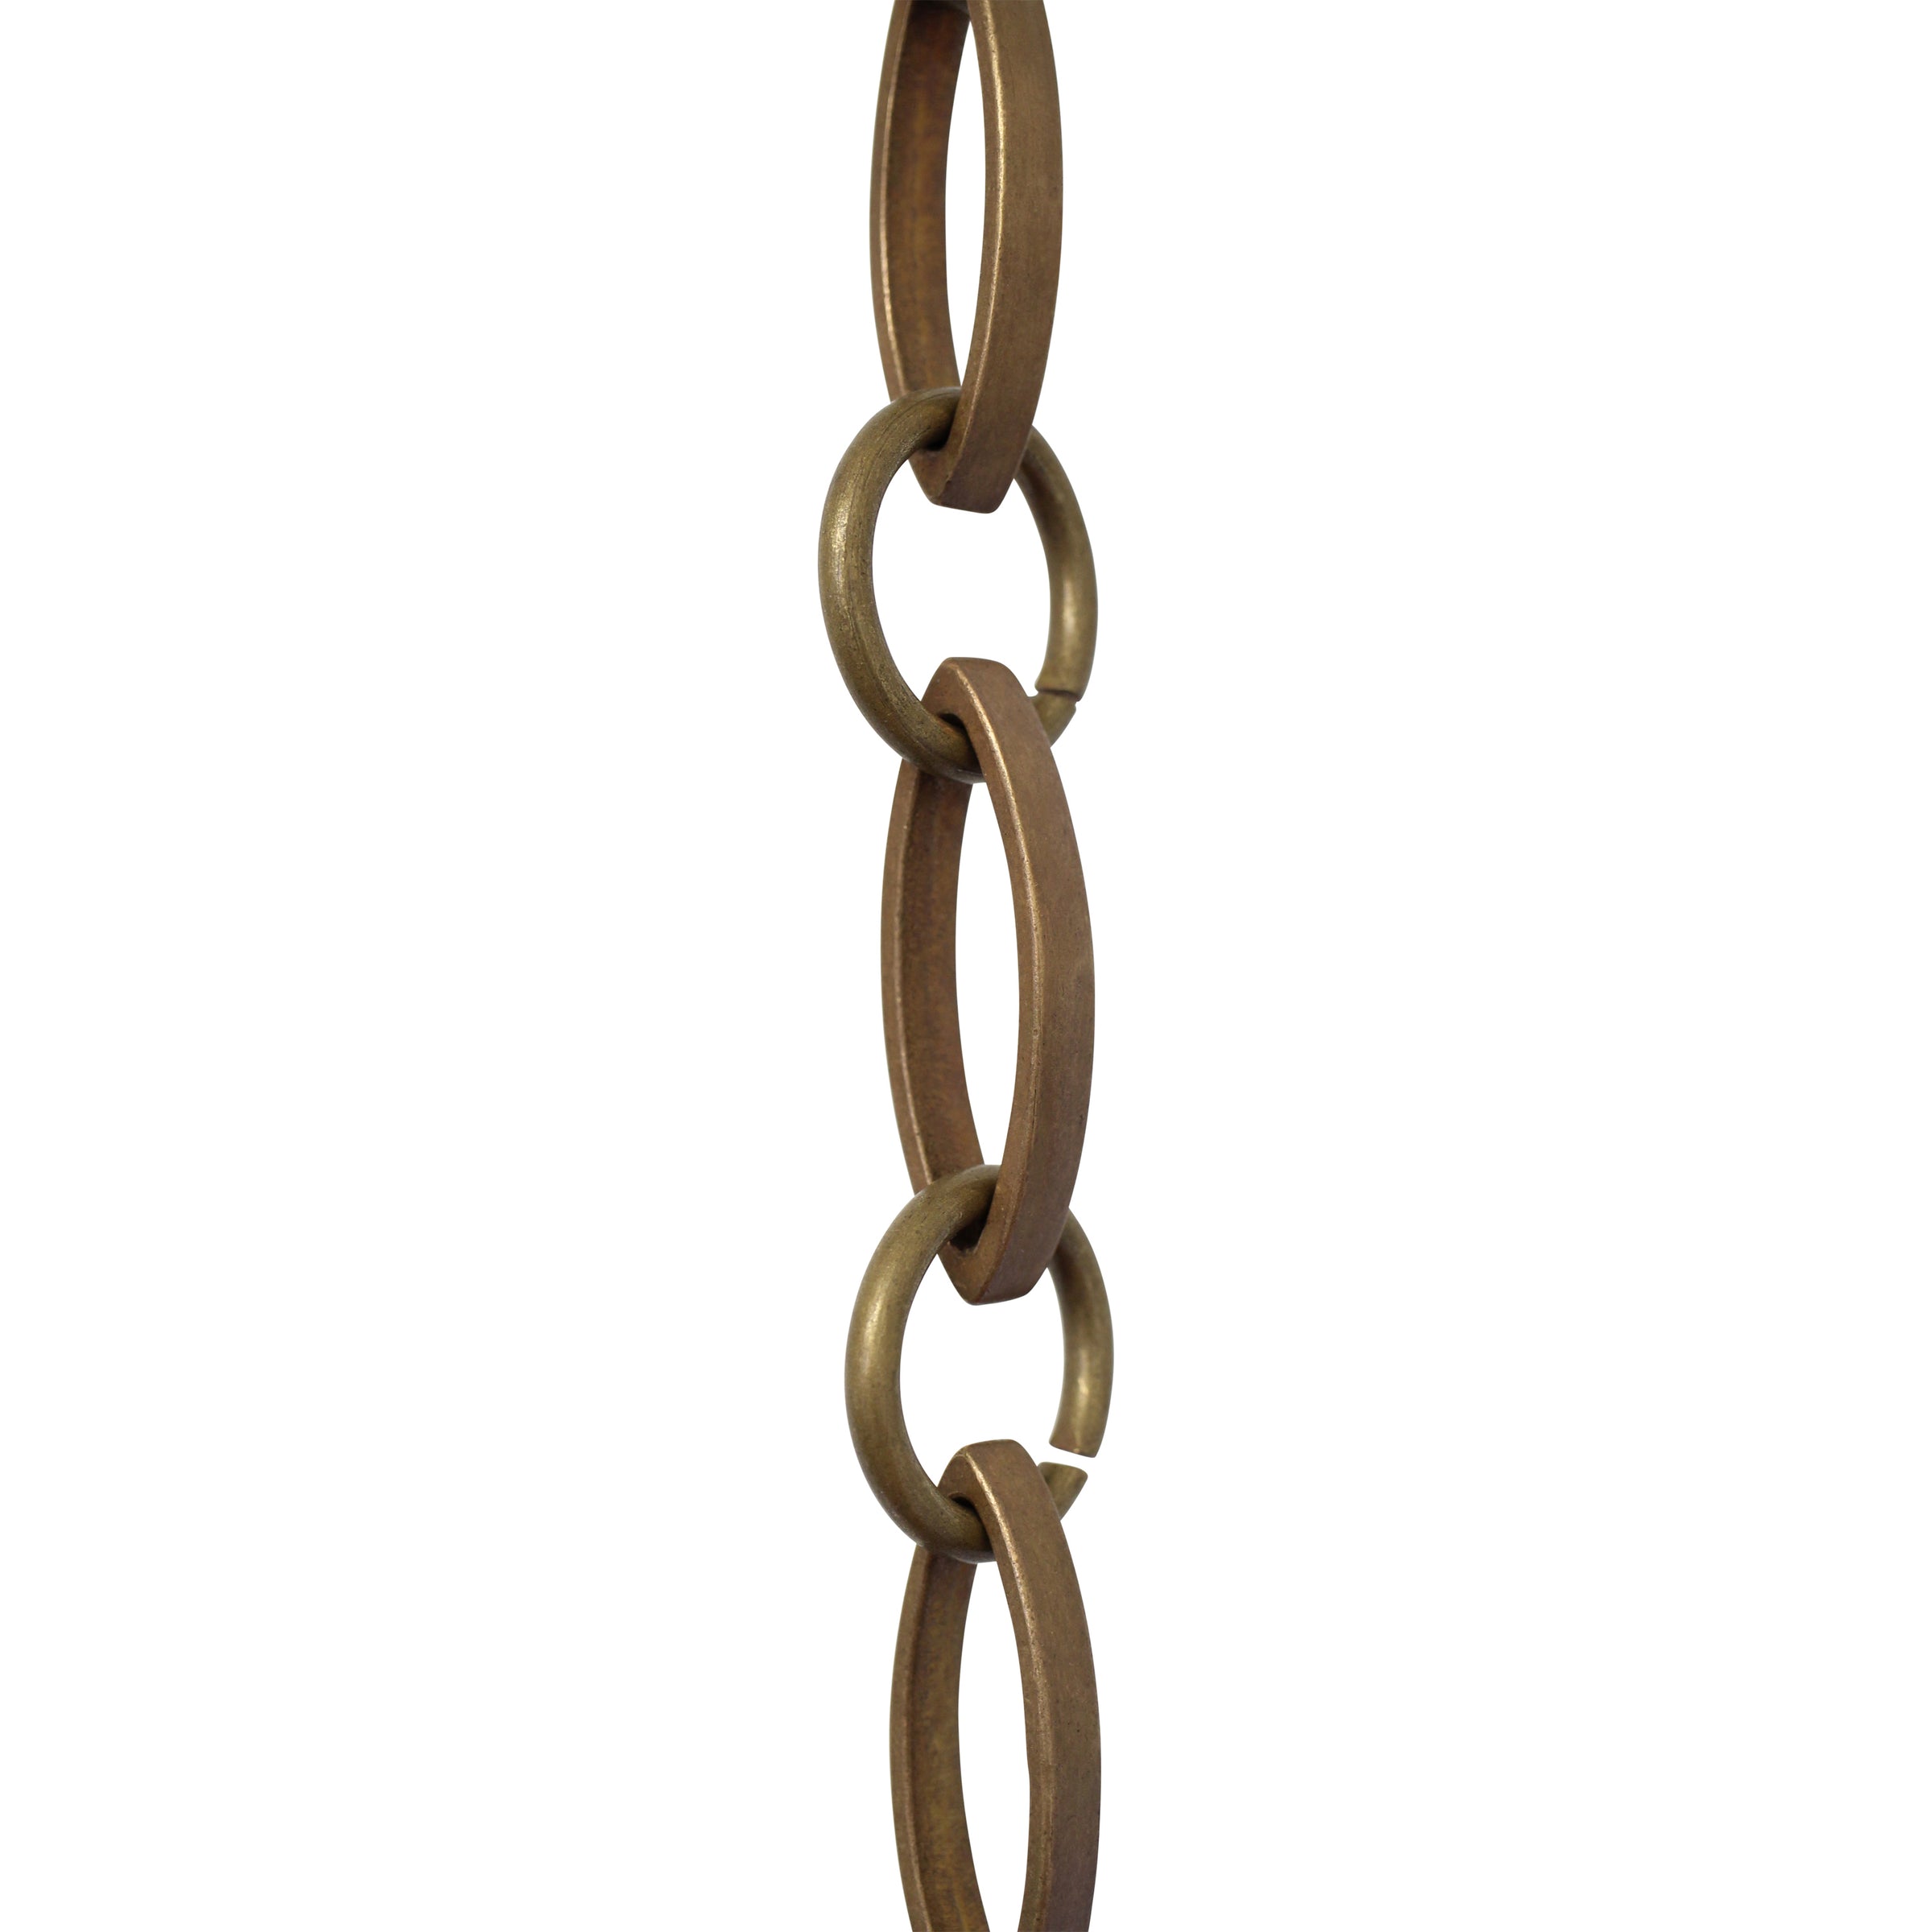 [Chain ST50-U] Steel Single Jack Chandelier Chain | 3 Sizes | RCH Hardware Antique Brass / U15